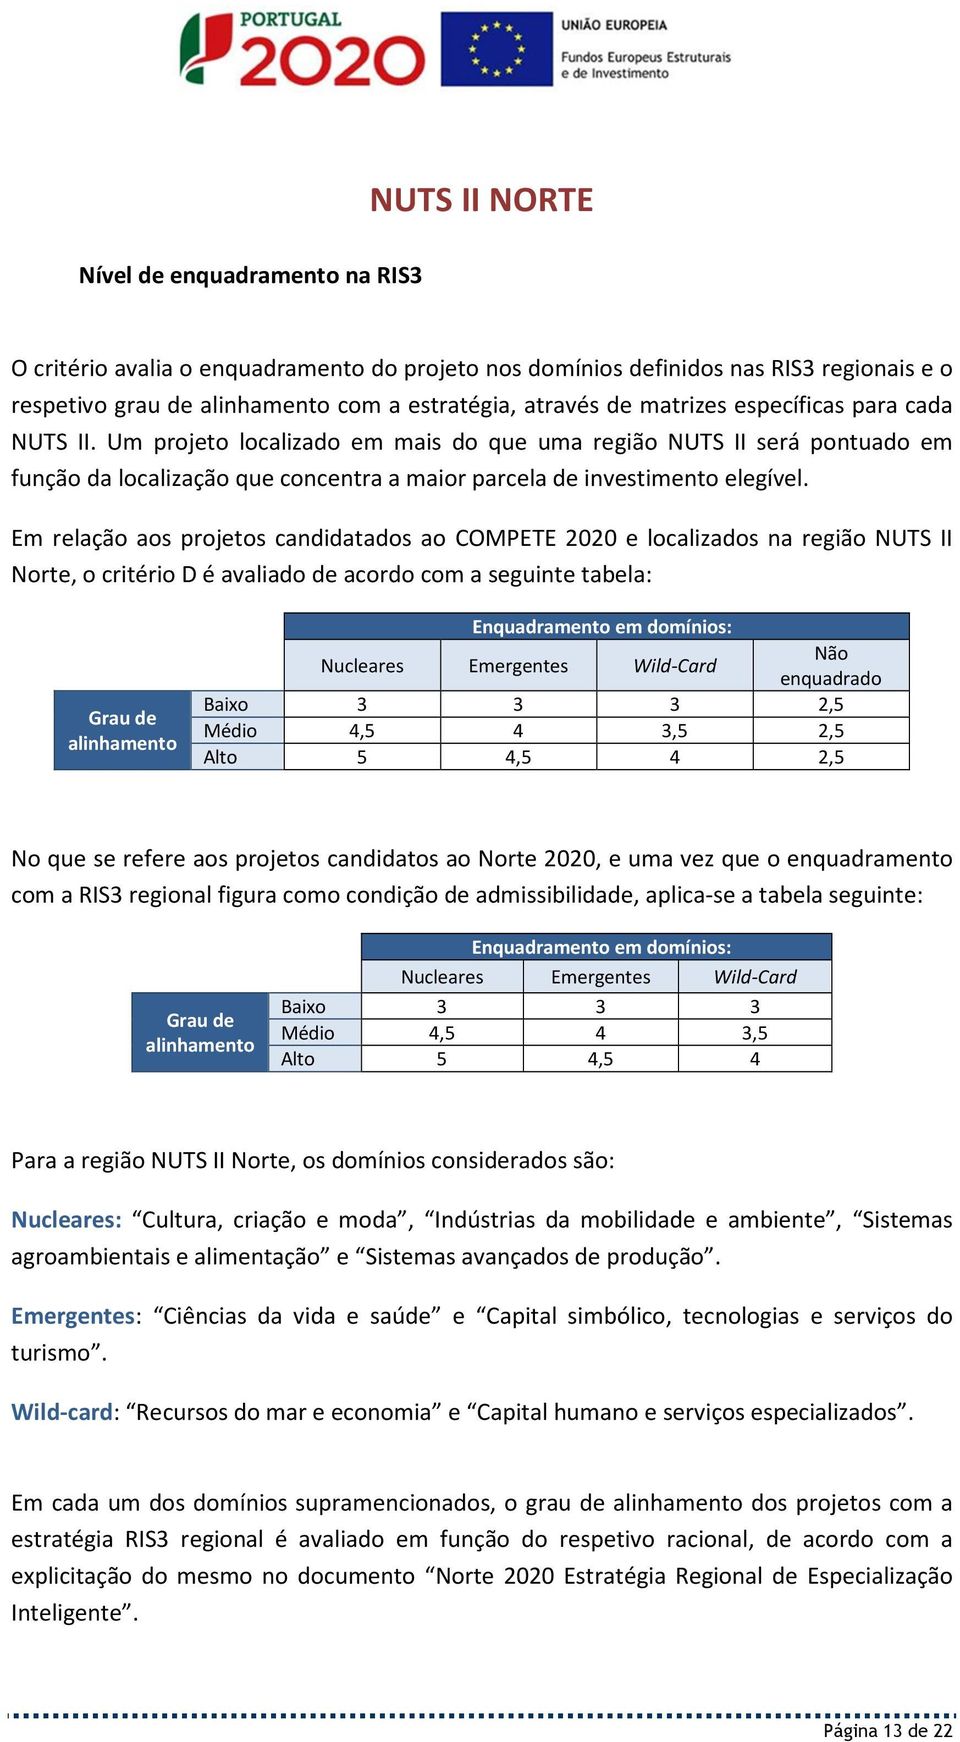 Em relação aos projetos candidatados ao COMPETE 2020 e localizados na região NUTS II Norte, o critério D é avaliado de acordo com a seguinte tabela: Grau de alinhamento Enquadramento em domínios: